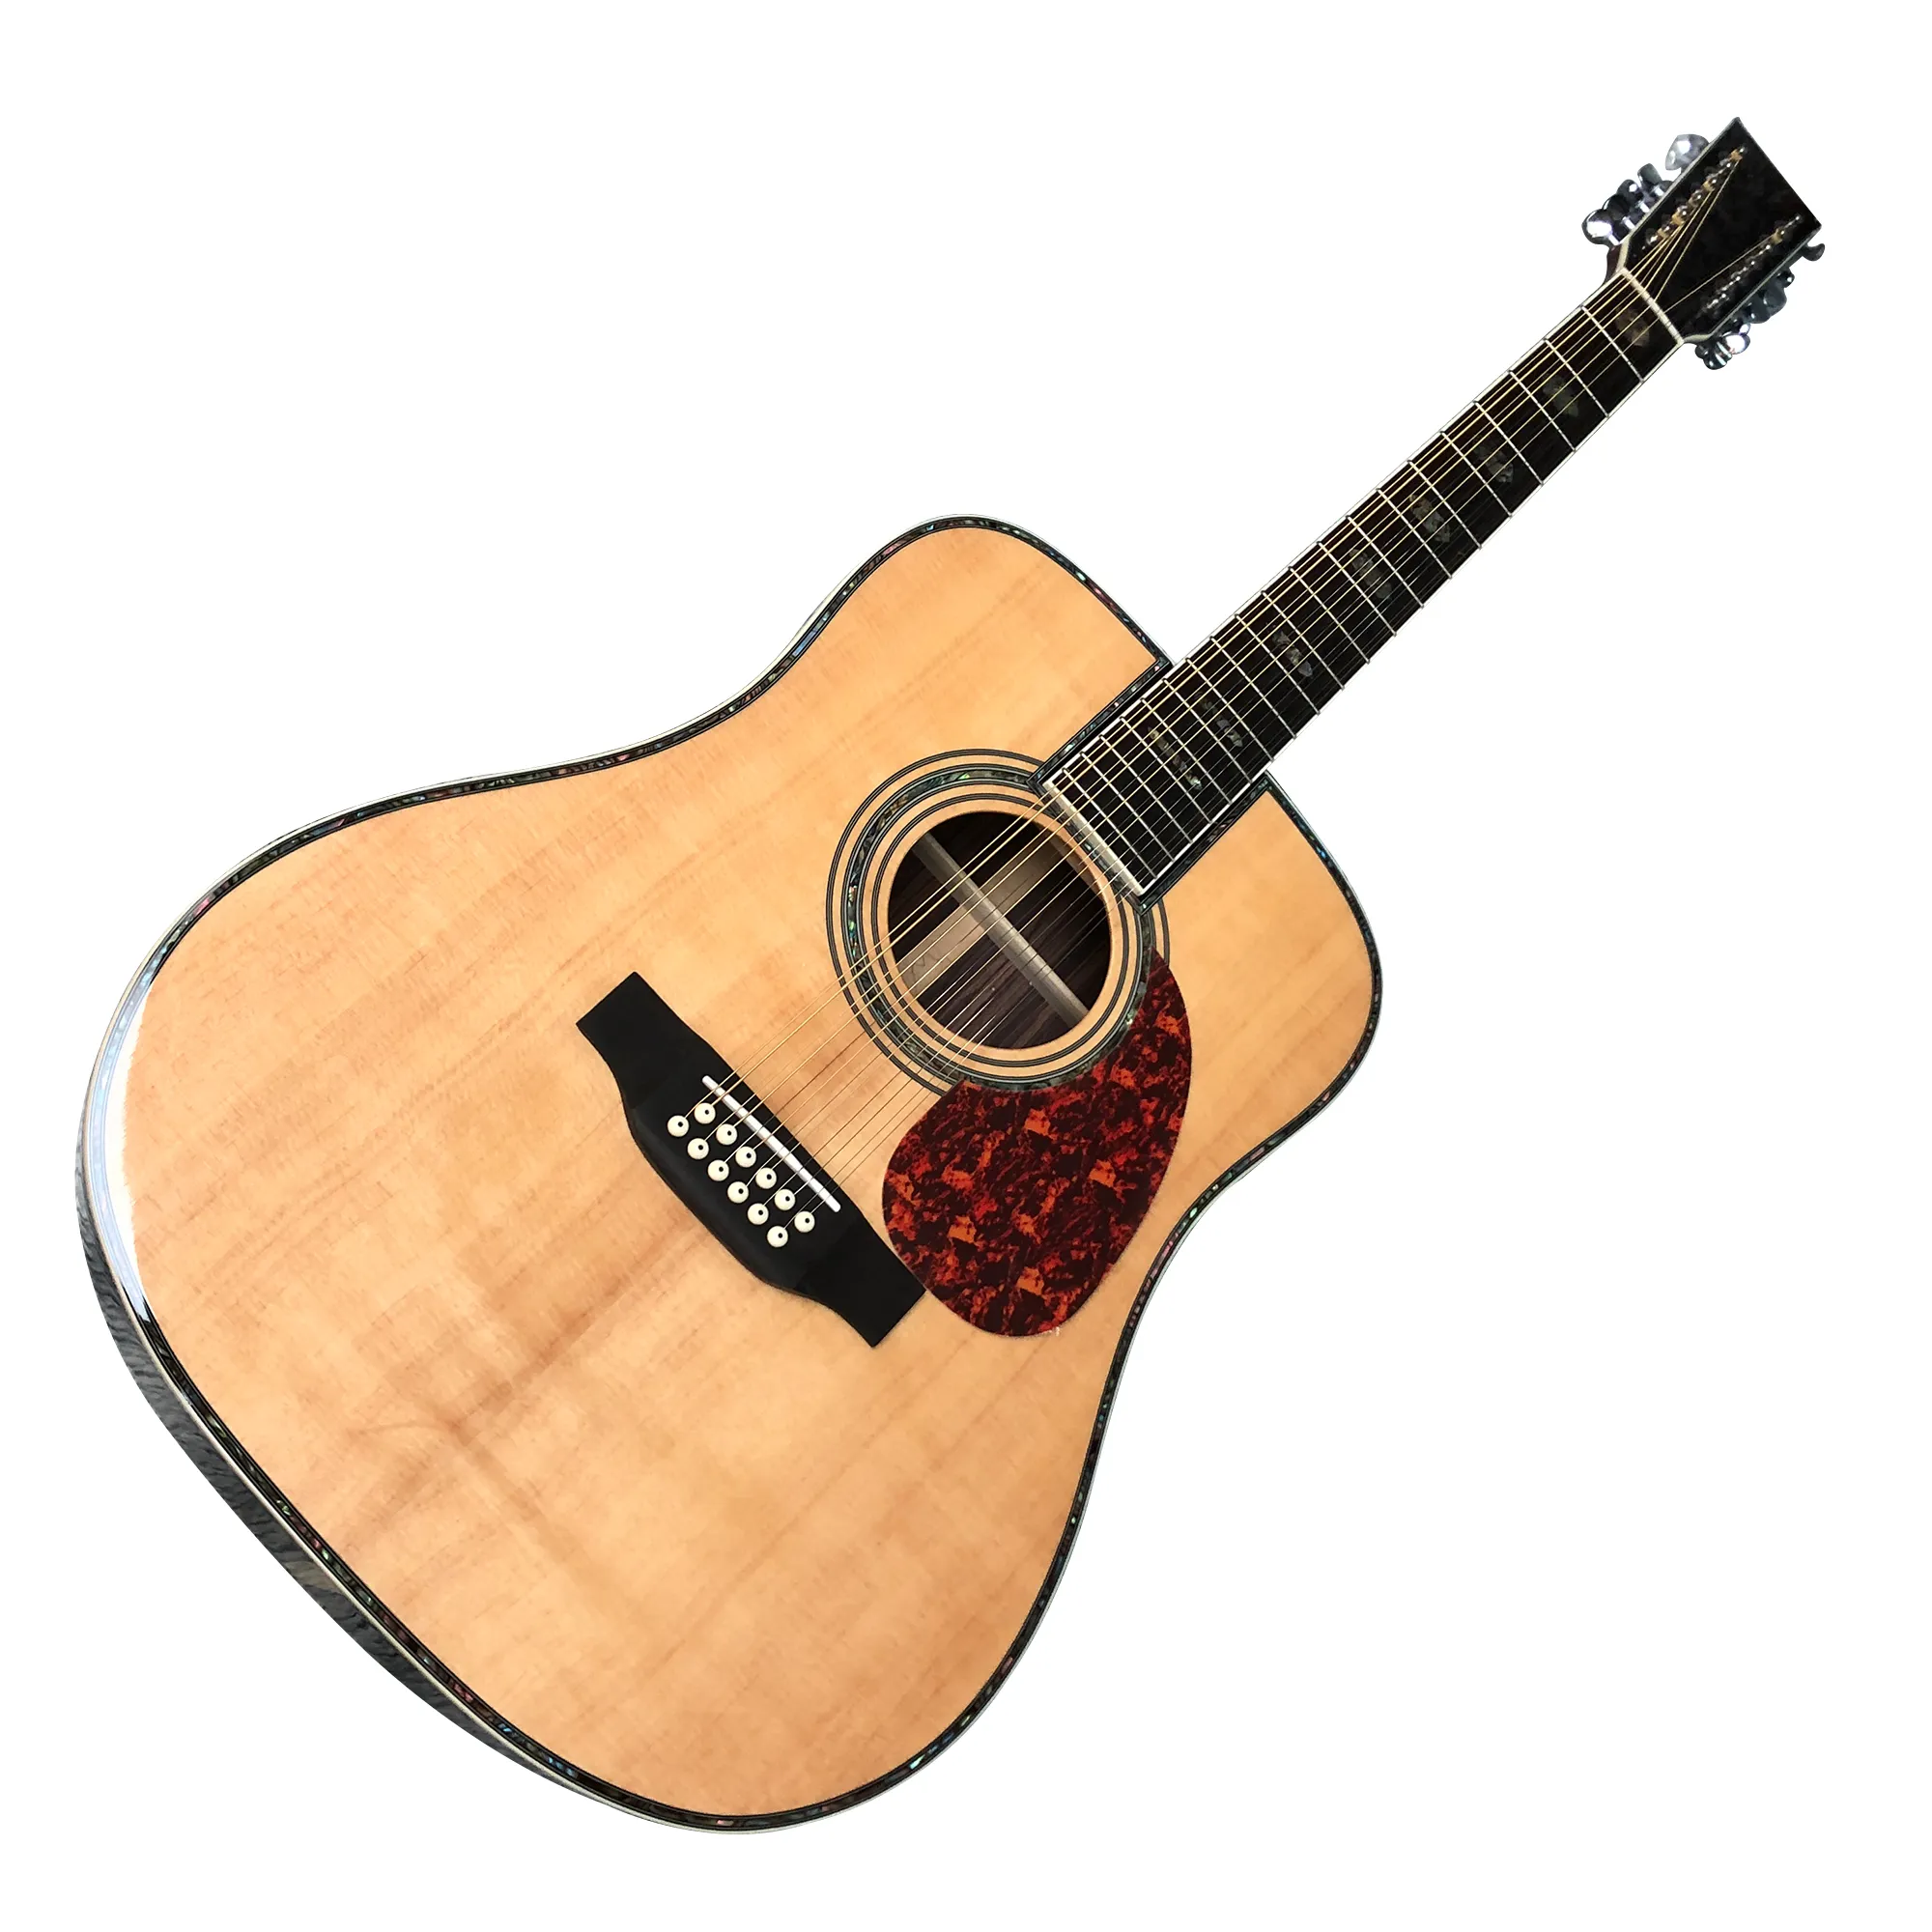 41-inch gegoten D45-serie 12-snarige akoestische gitaar met massief houten profiel